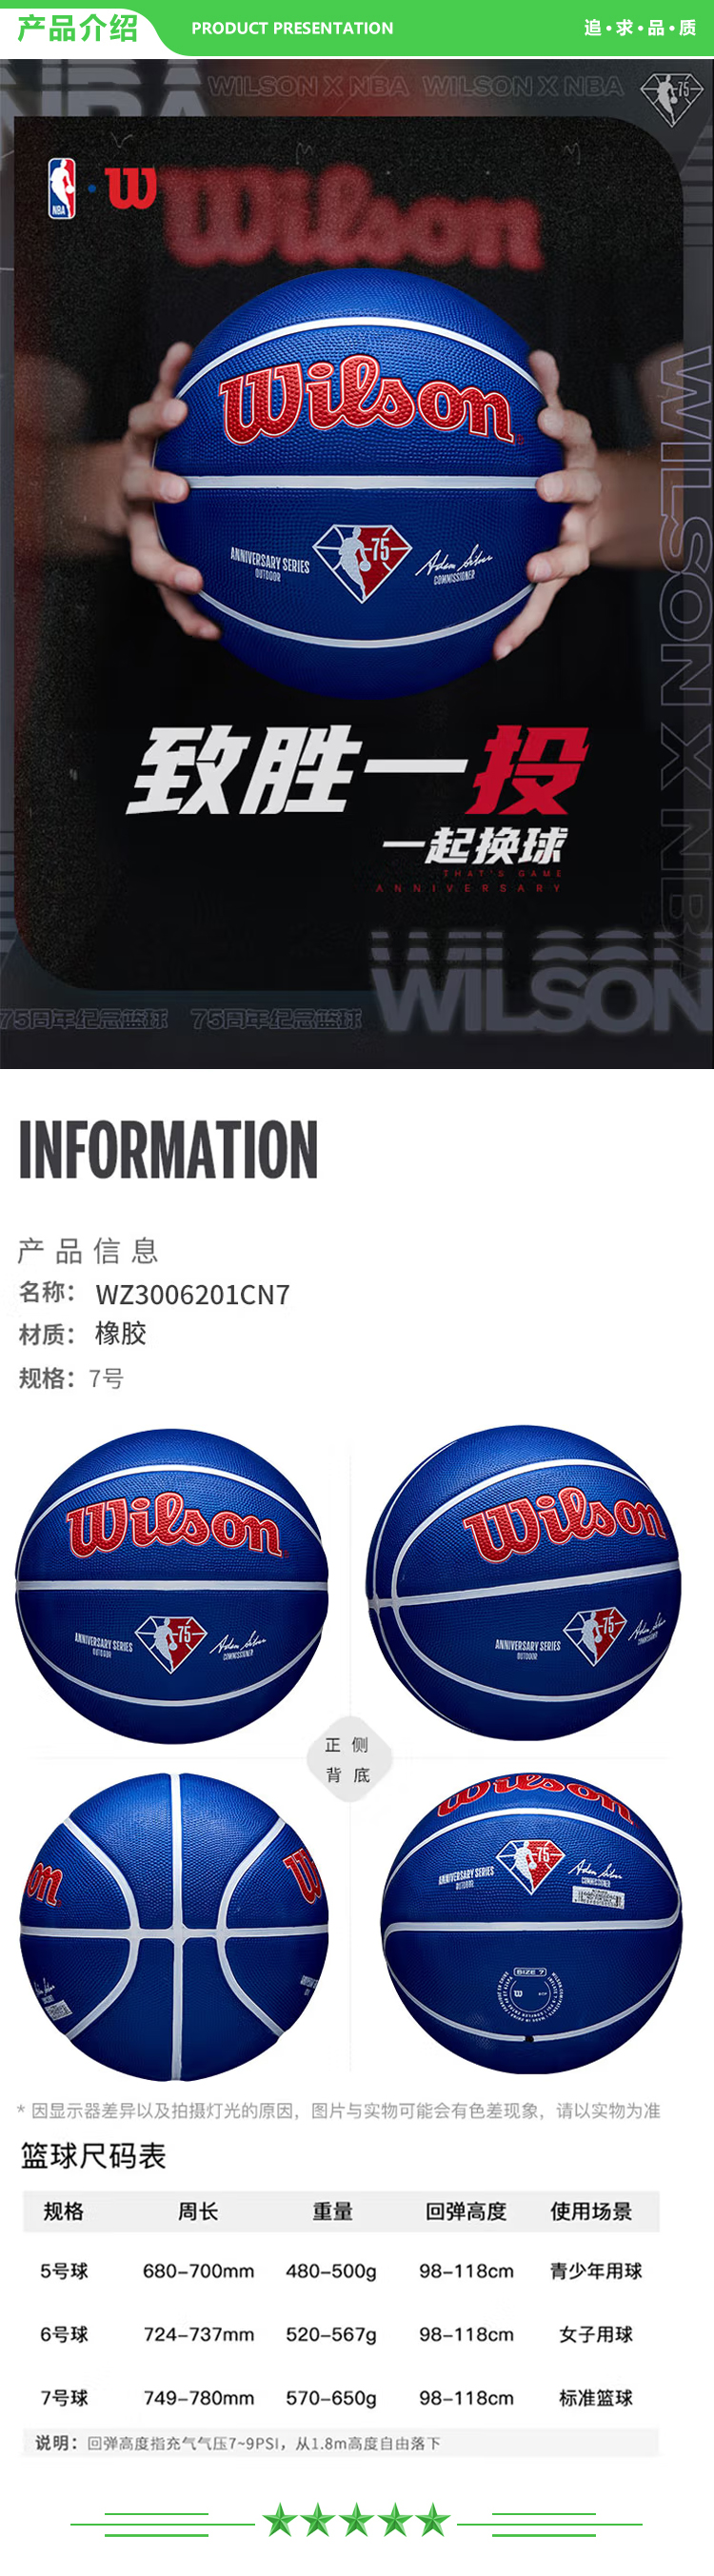 威尔胜 Wilson WZ3006201CN7 2021新款NBA75周年限量款篮球7号球 橡胶篮球 .jpg